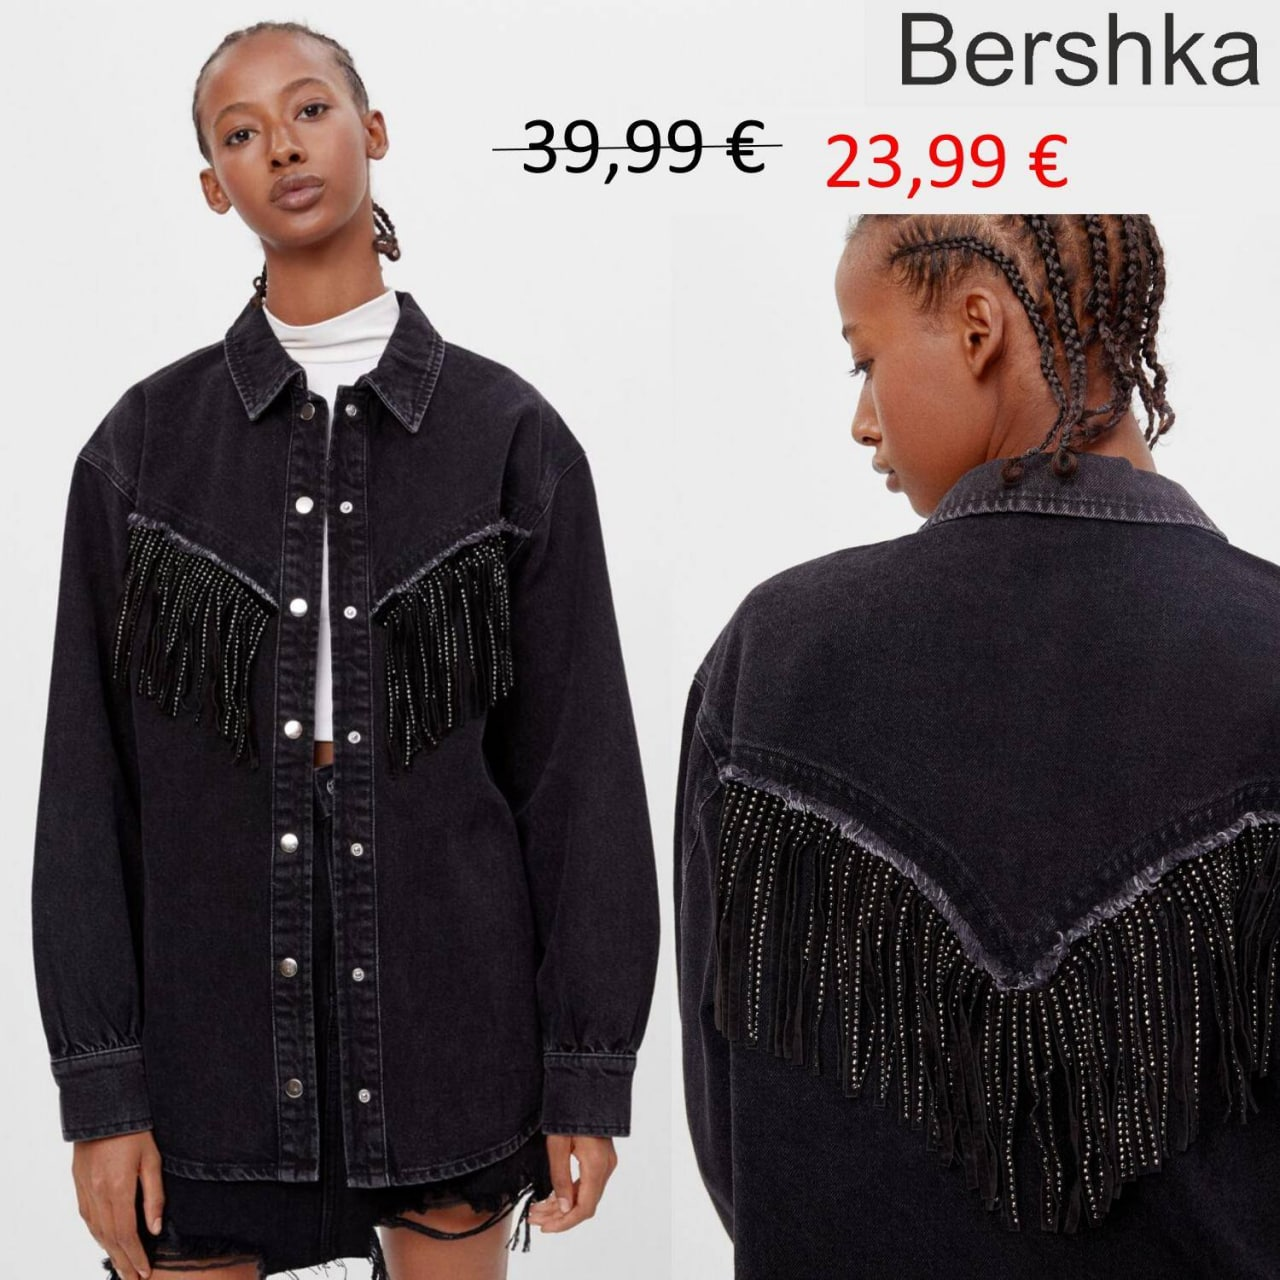 brand #bershka_27_11_1 – Telegraph